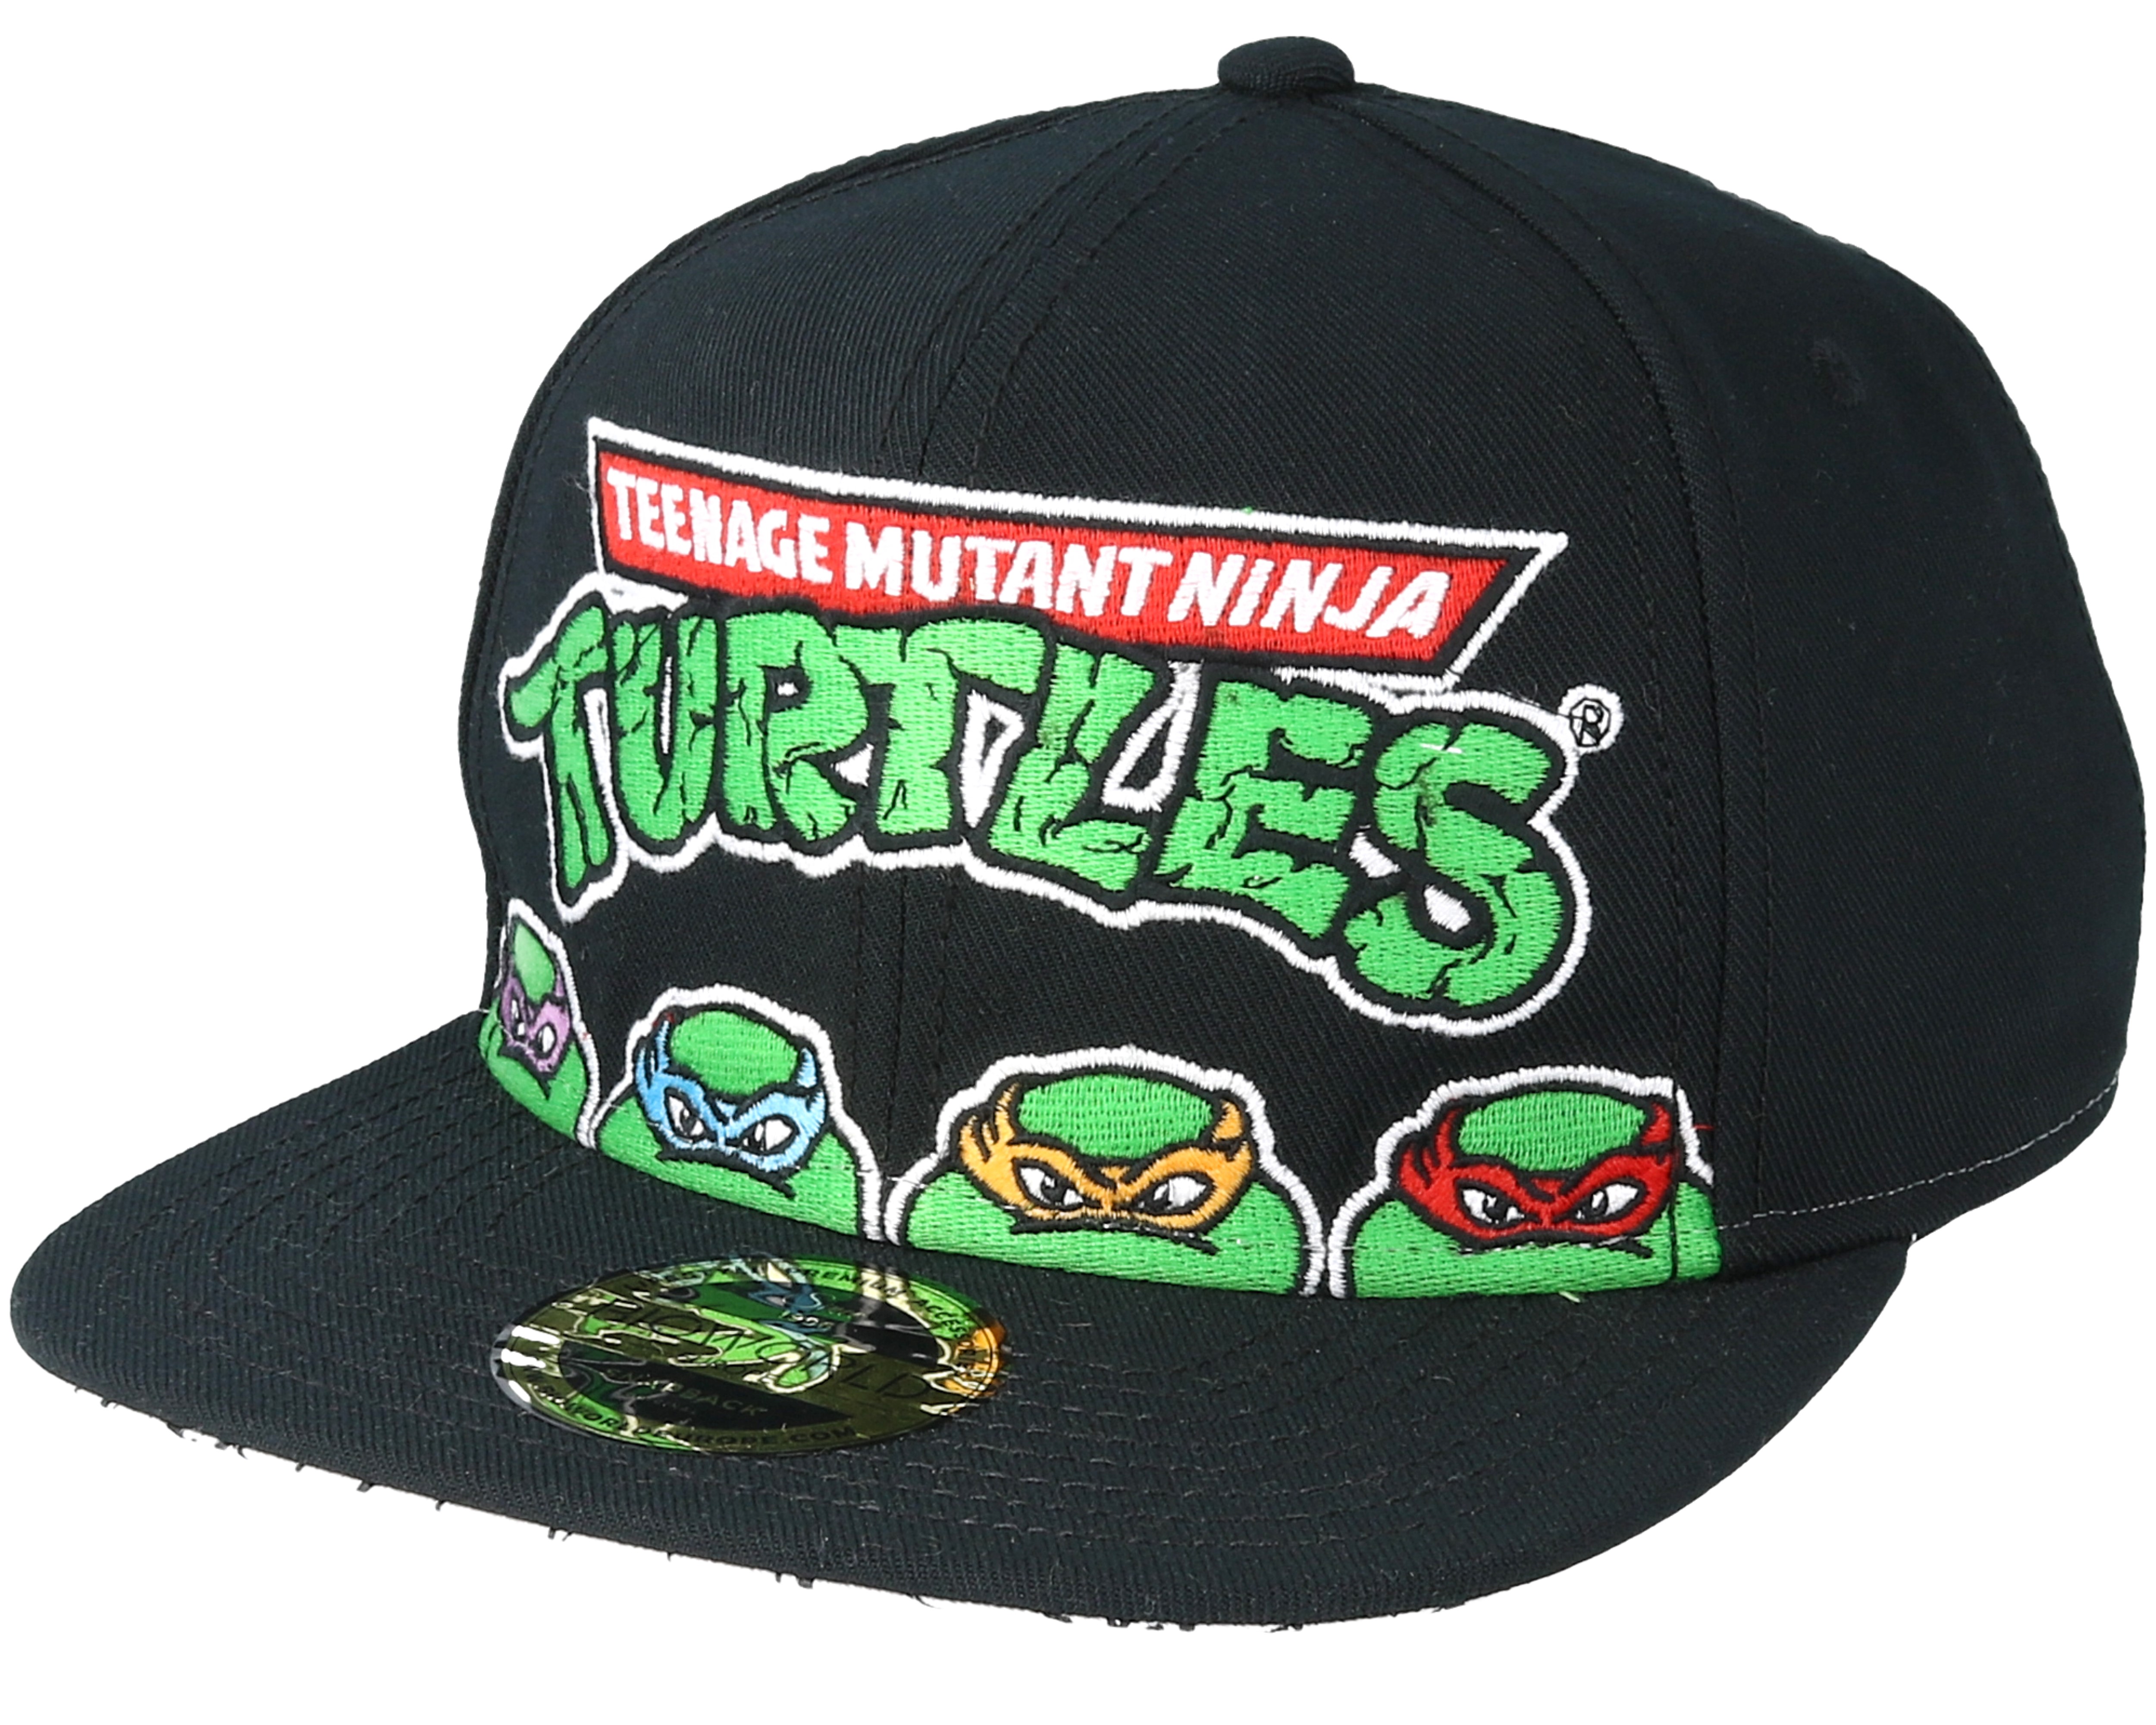 Teenage Mutant Ninja Turtles Black Snapback - Bioworld